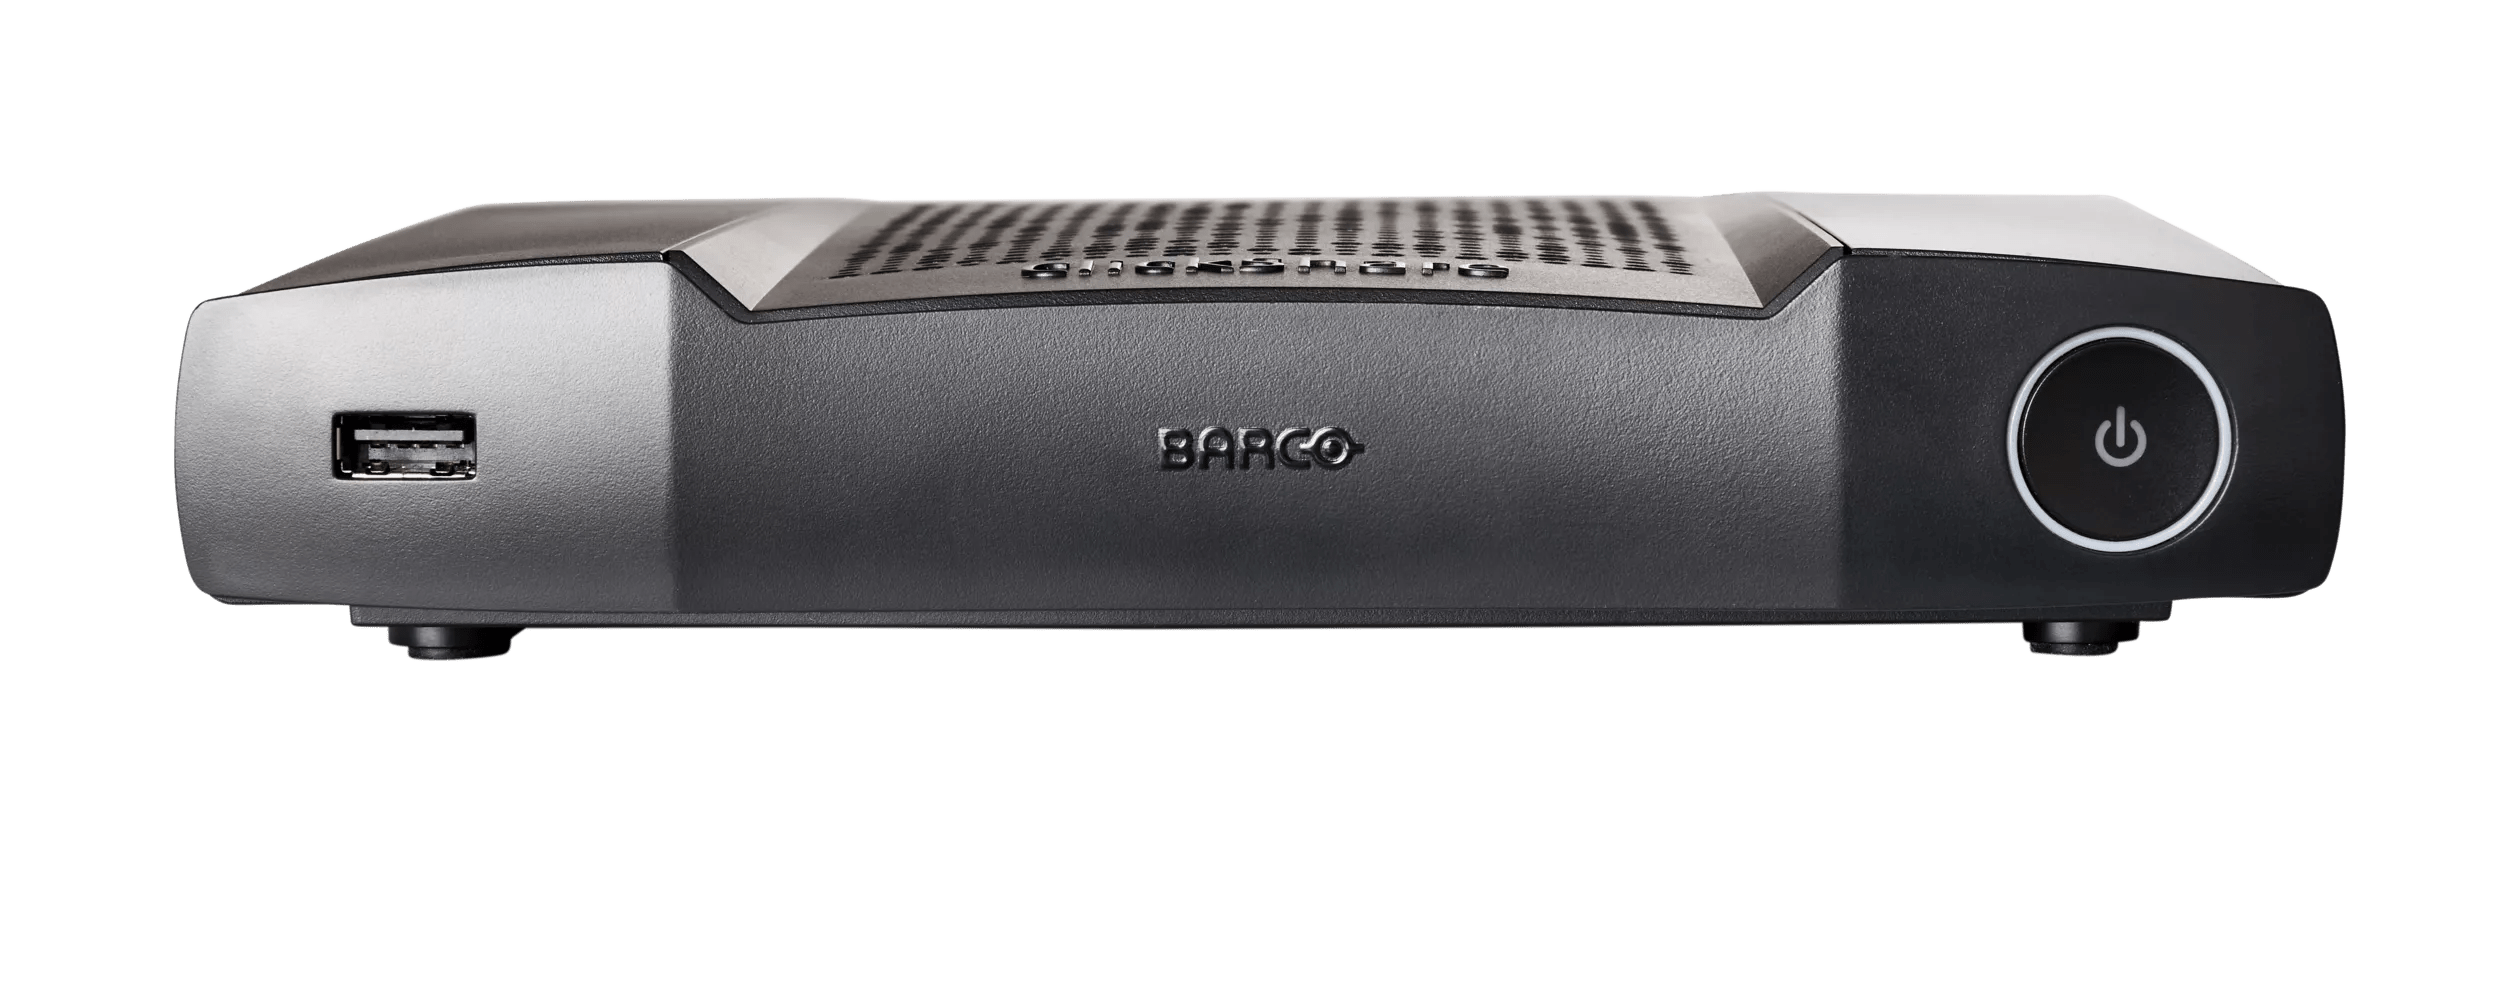 Barco ClickShare CX-20 ワイヤレス会議システム - PC周辺機器